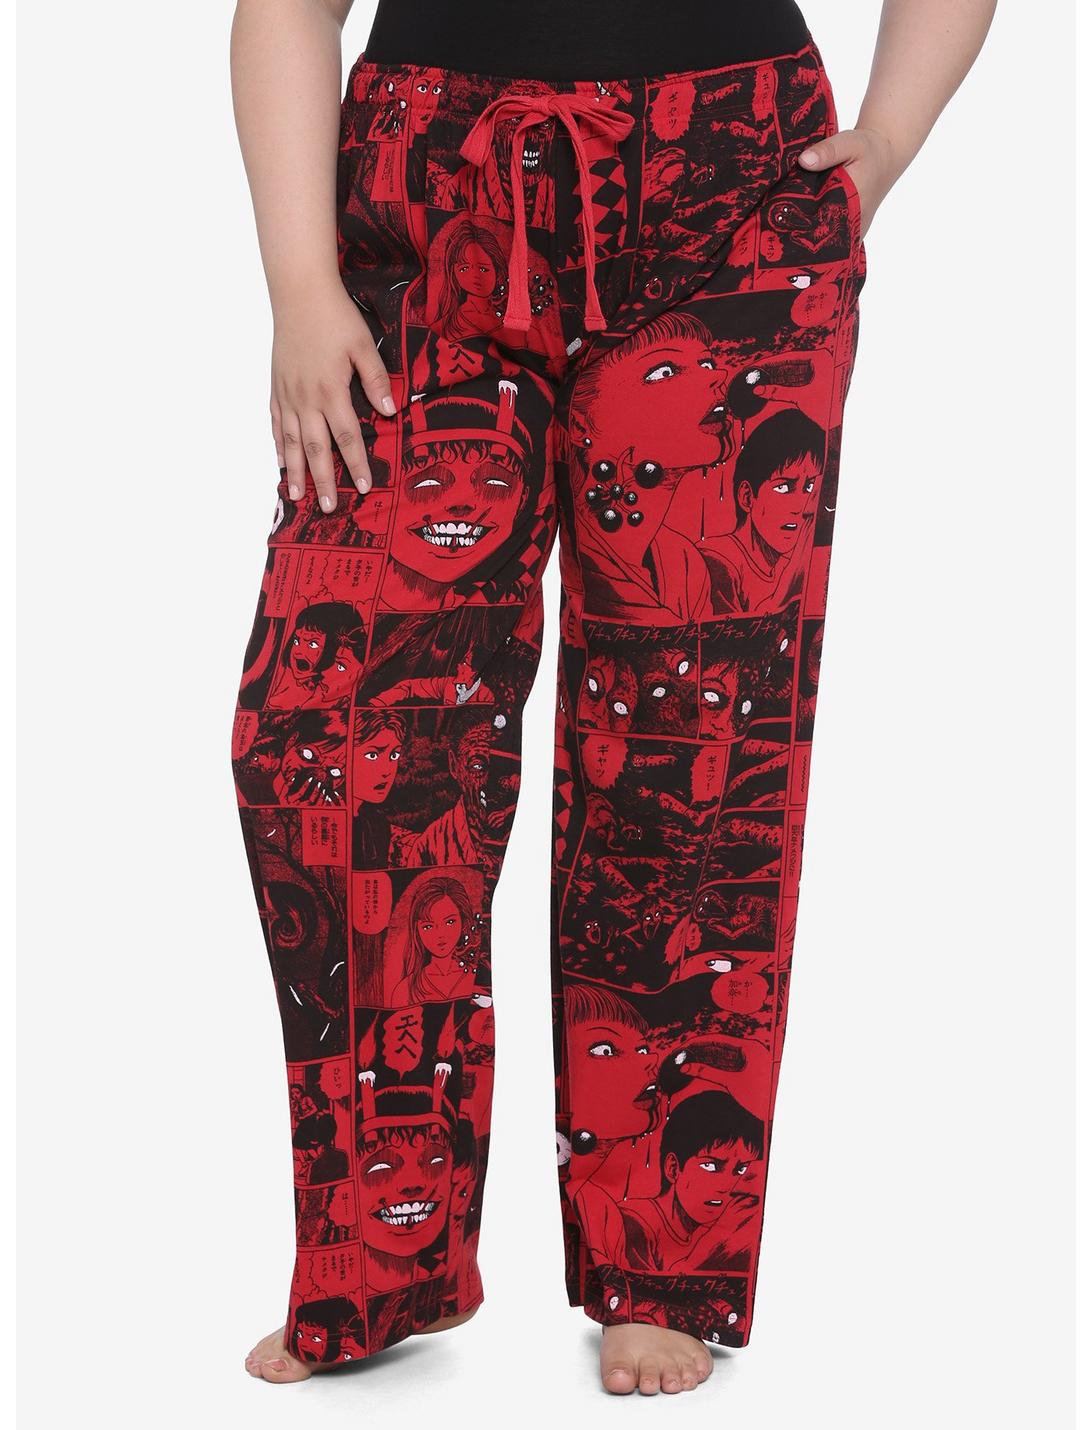 Junji Ito Panel Red Girls Pajama Pants Plus Size, RED, hi-res